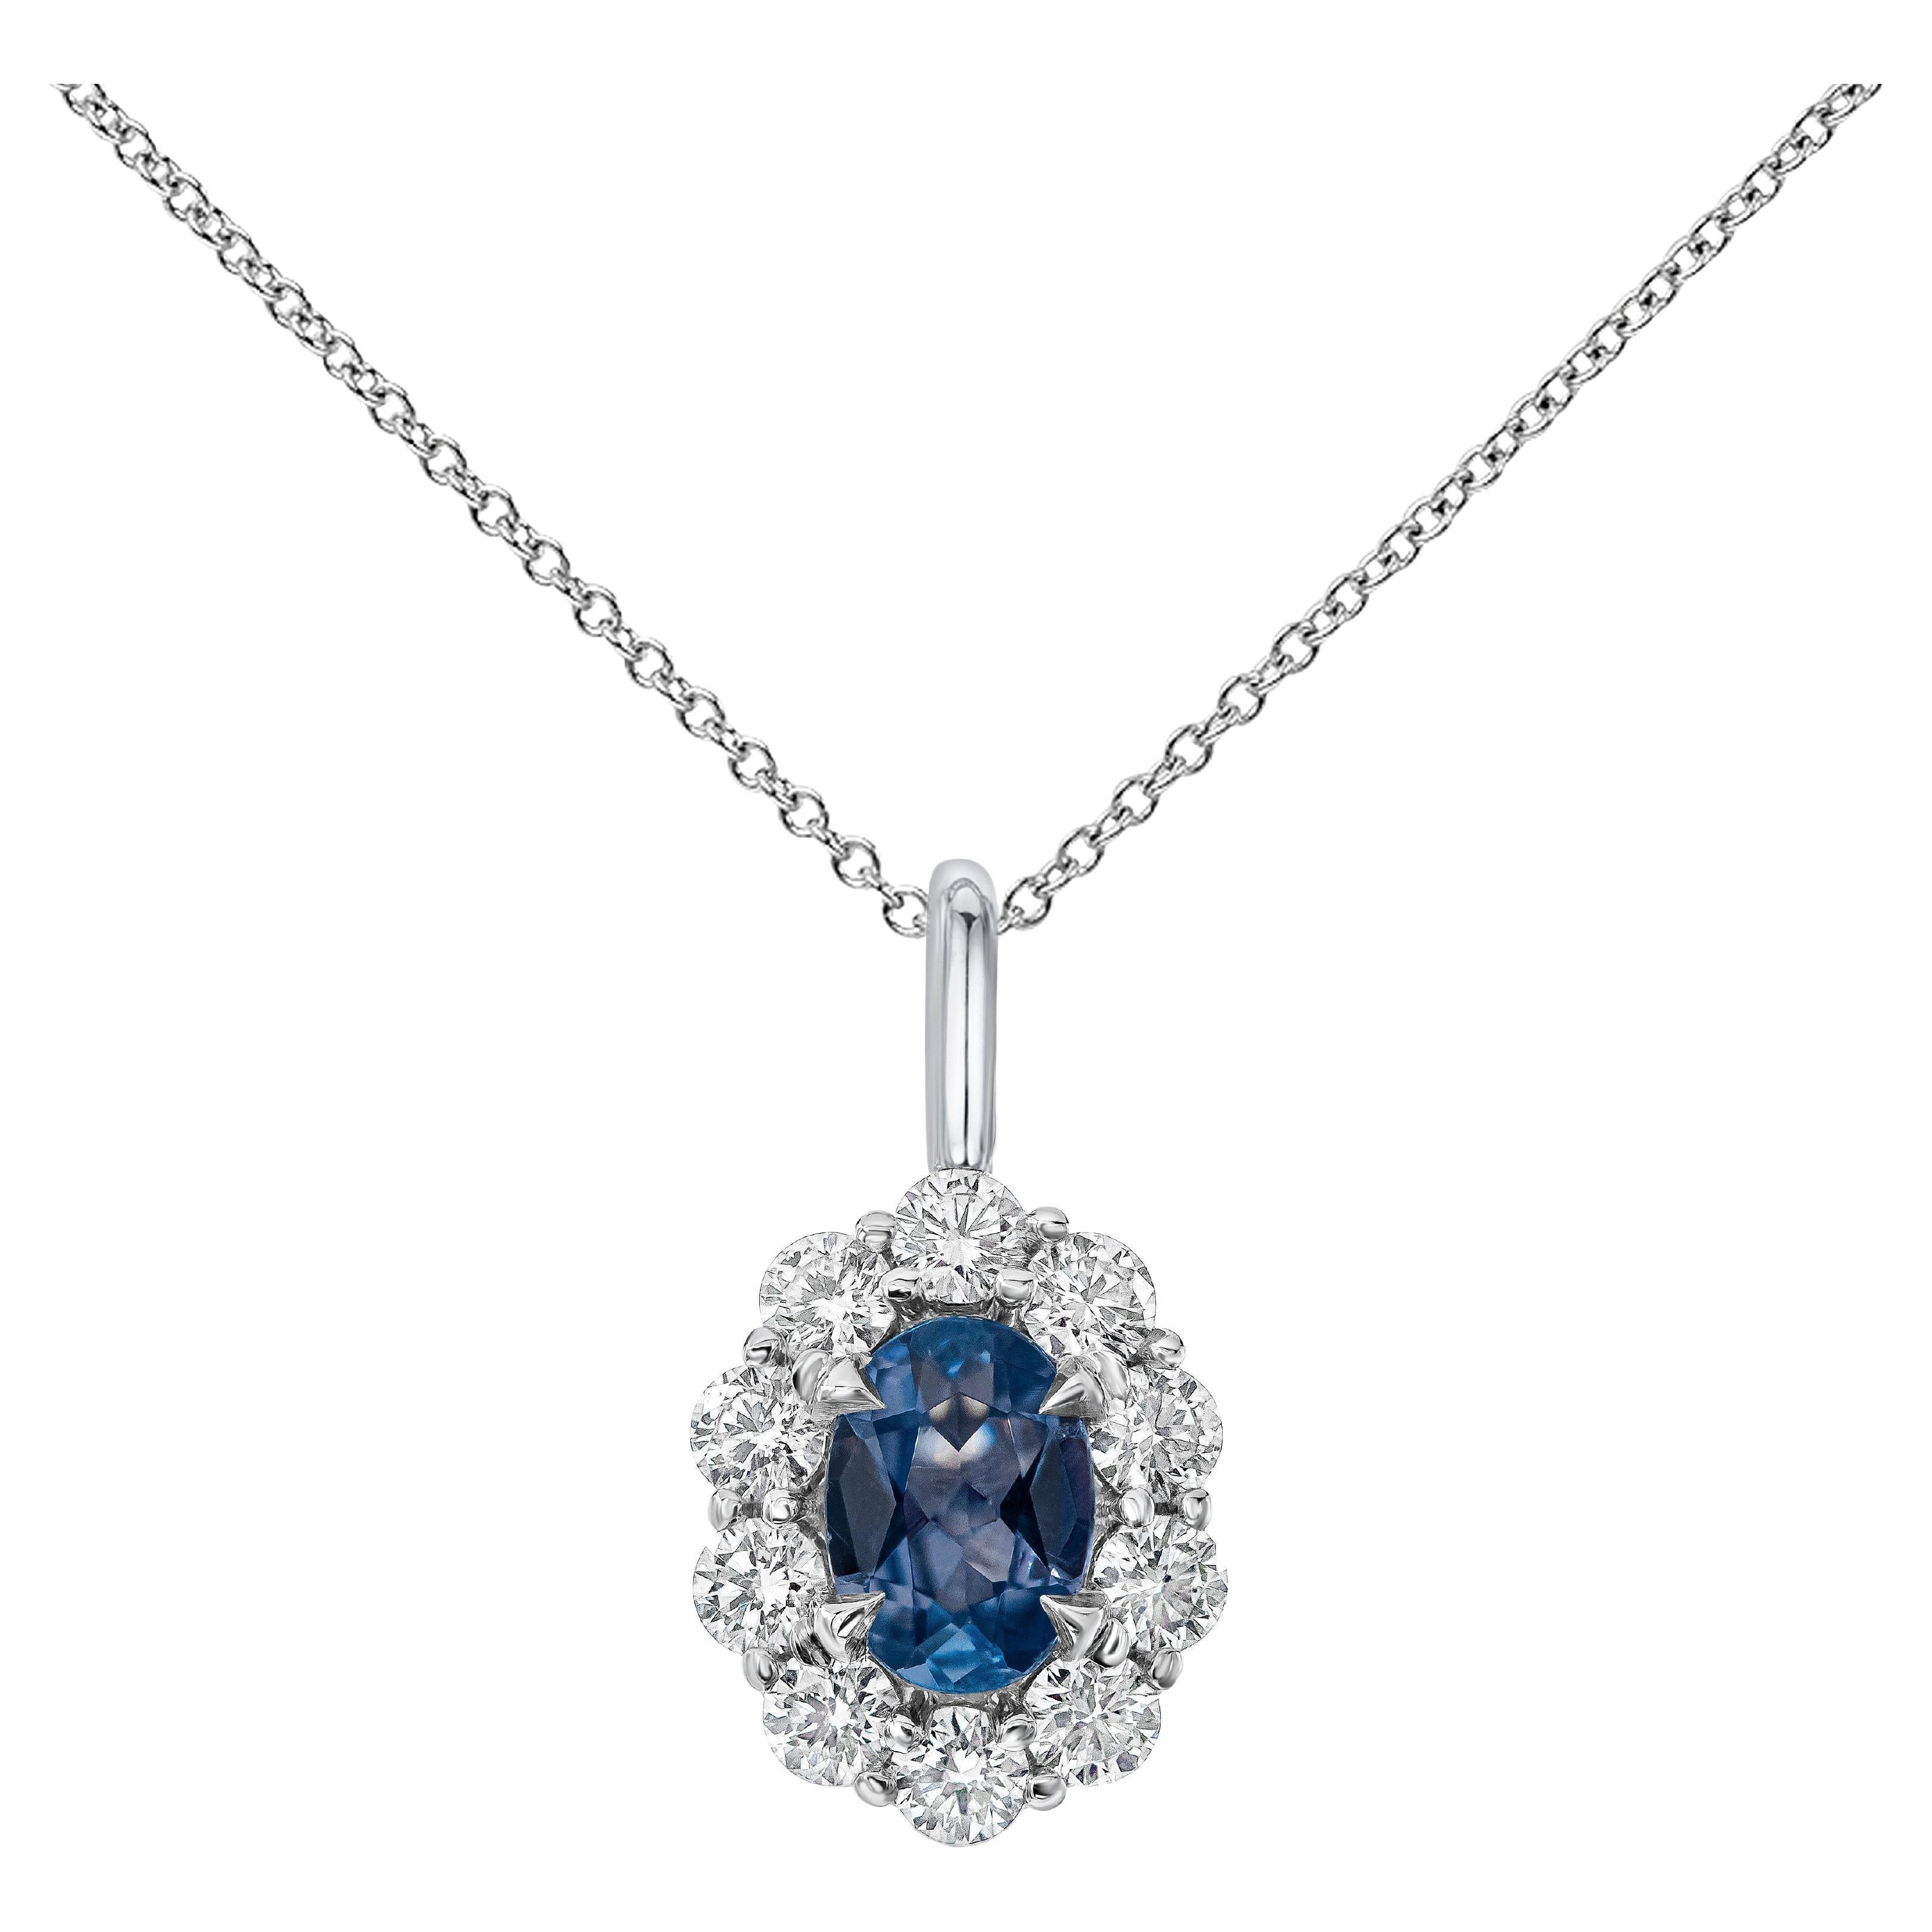 Roman Malakov, collier pendentif avec saphir taille ovale 0,38 carat et halo de diamants